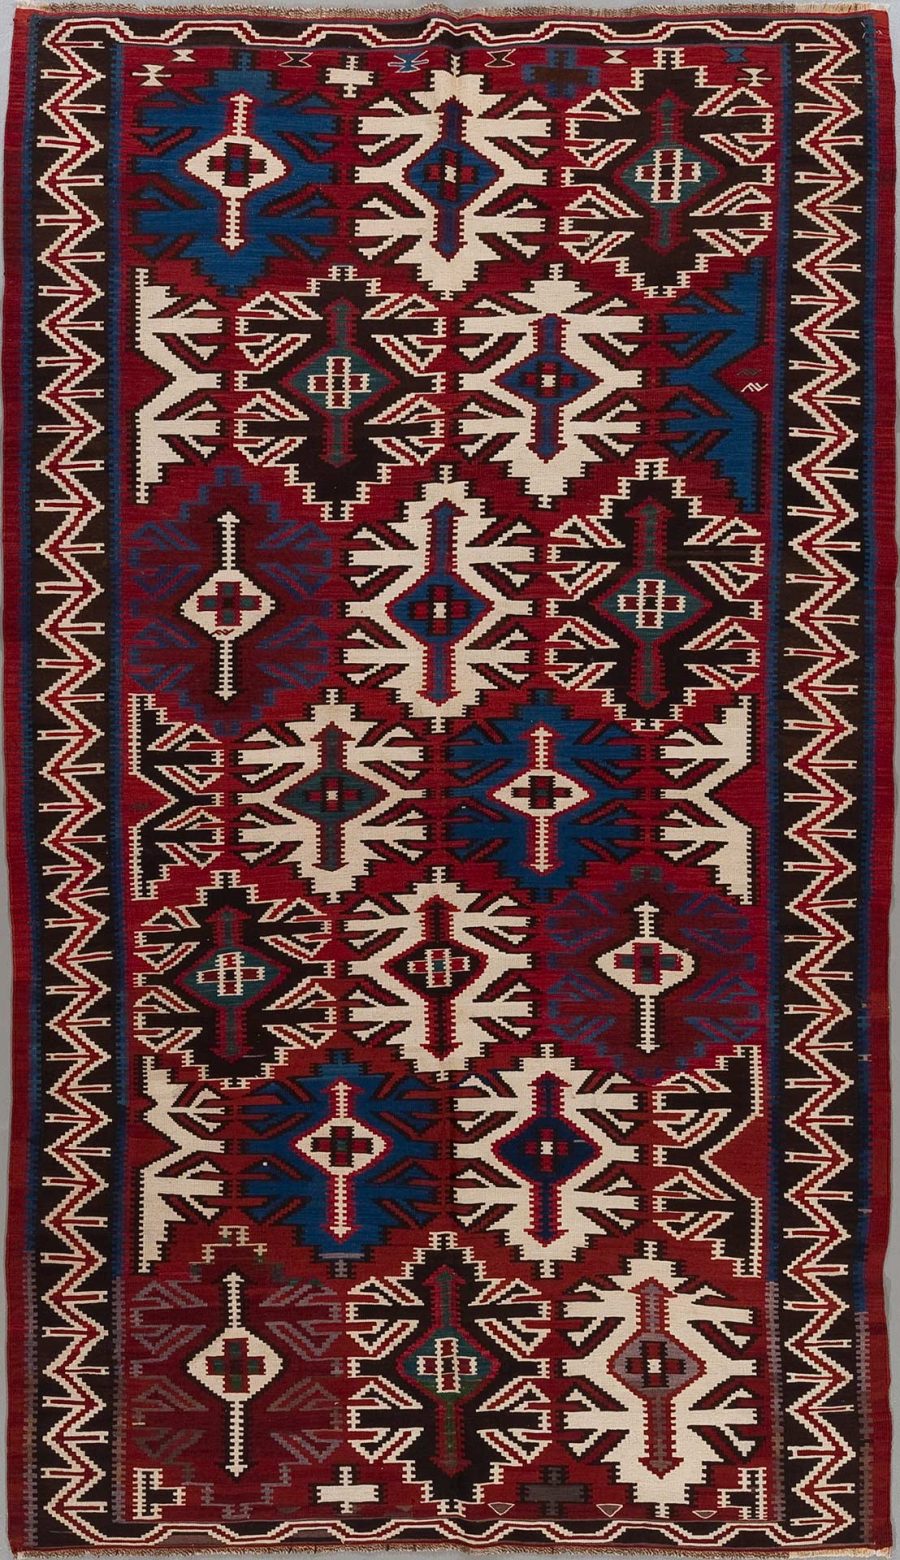 Traditioneller handgewebter Teppich mit komplexen geometrischen Mustern und Symmetrien, hauptsächlich in den Farben Rot, Blau, Schwarz und Weiß.